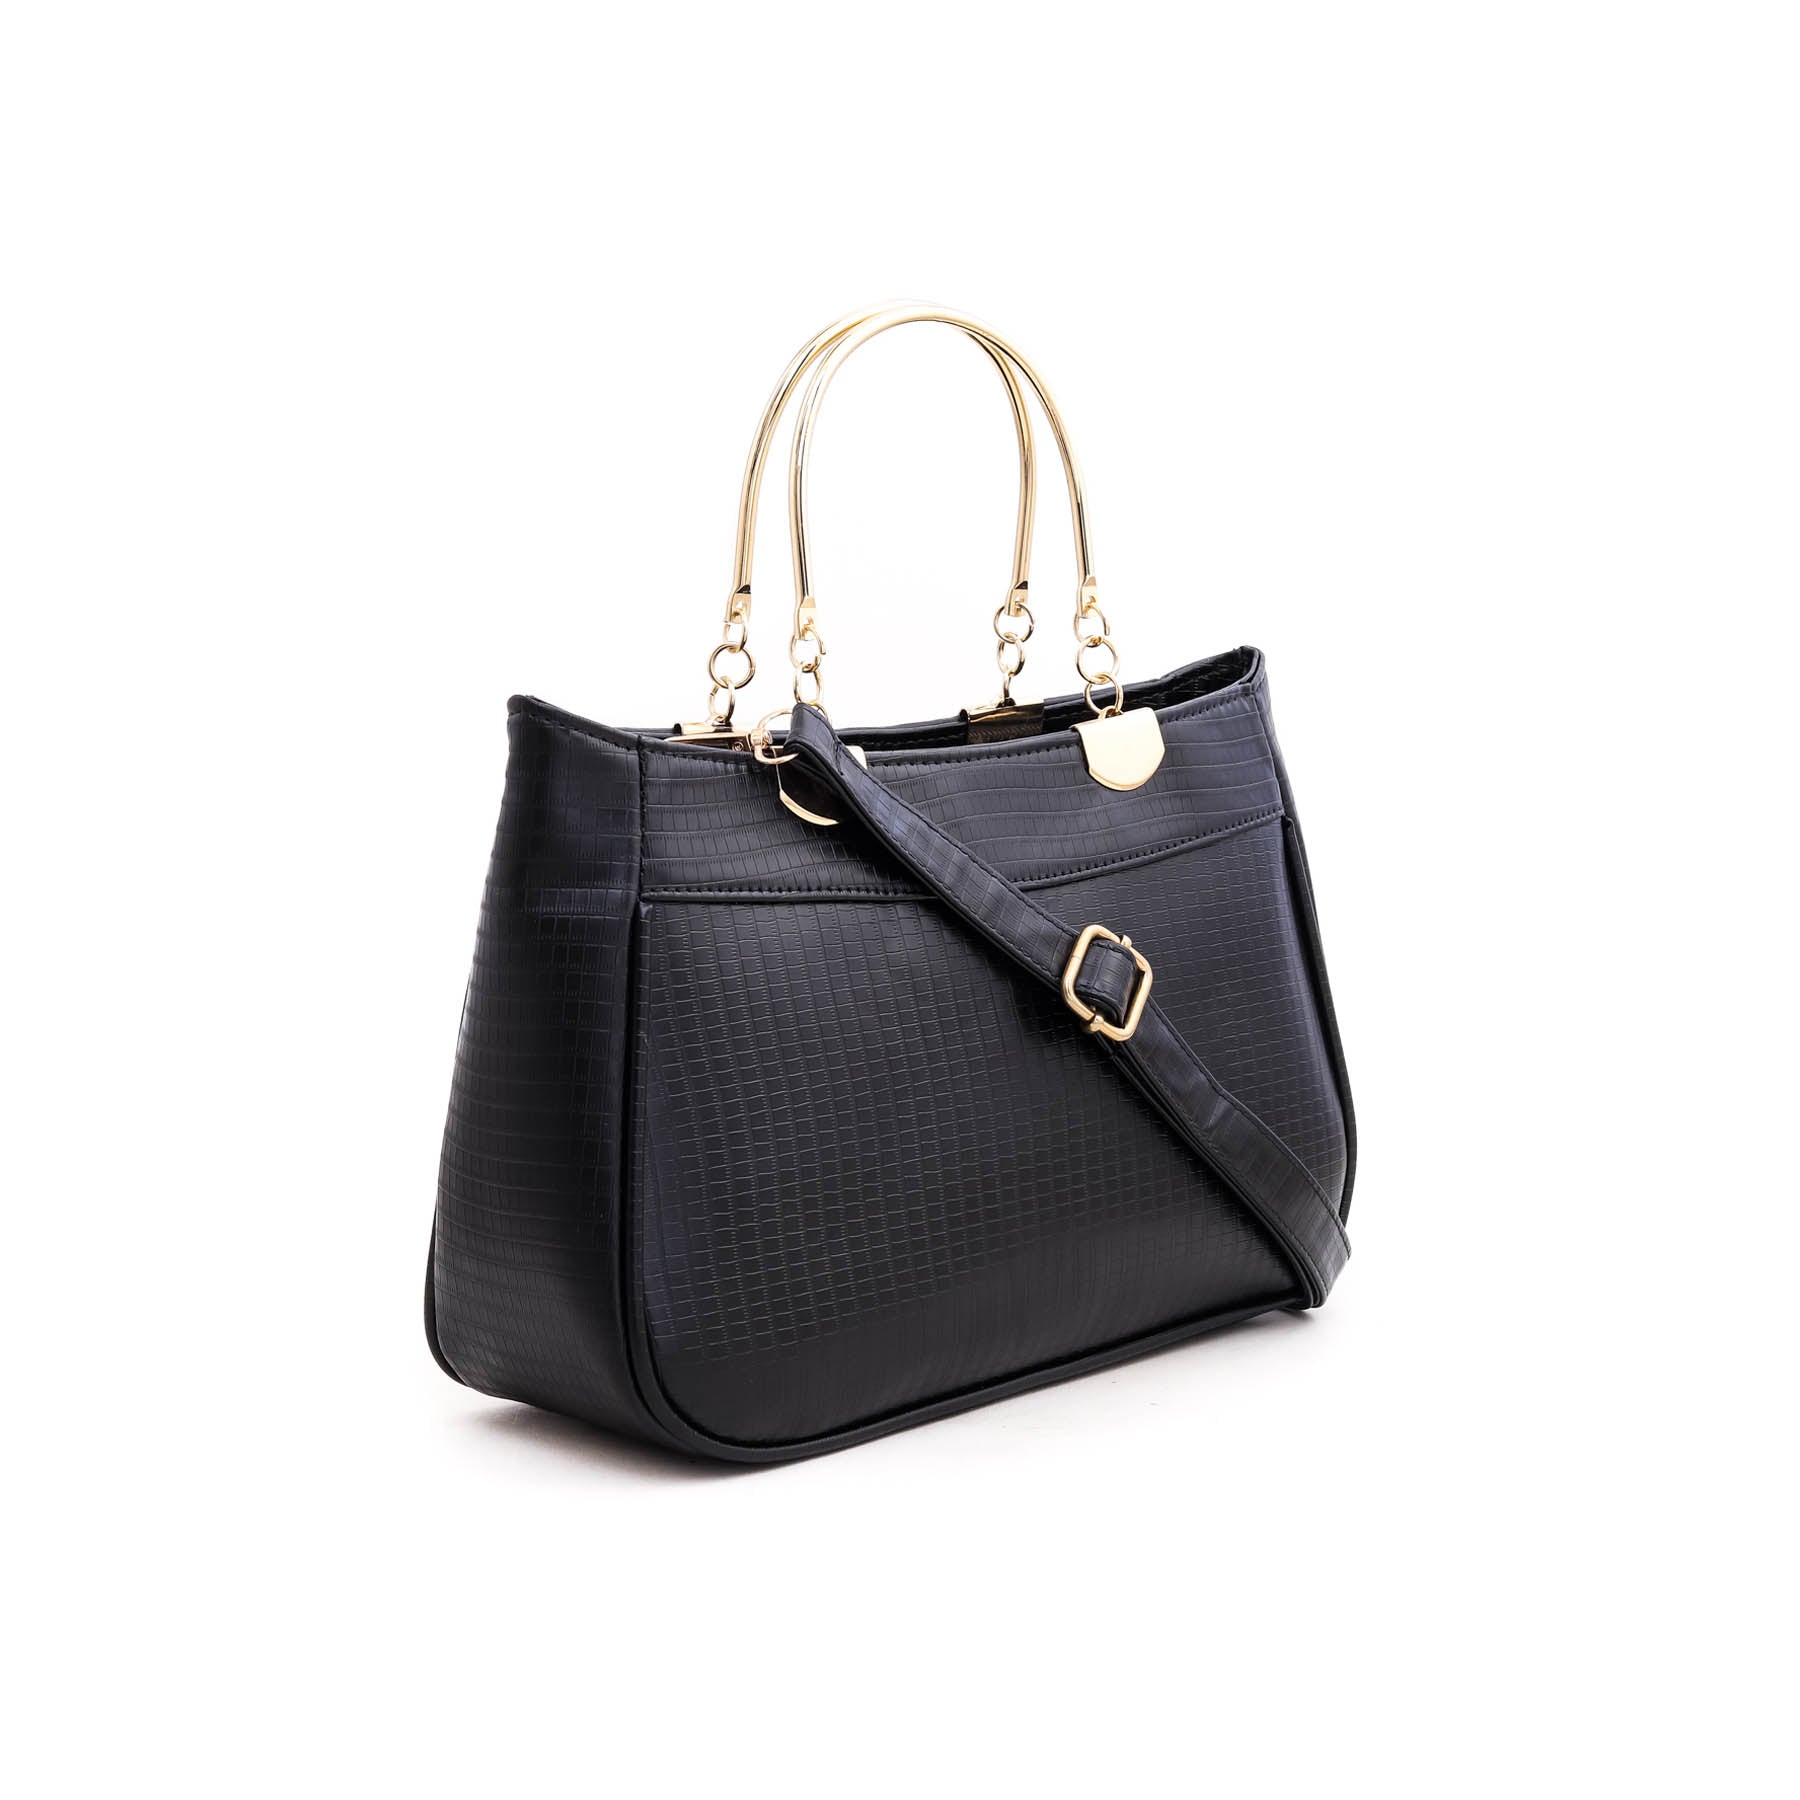 Black Formal Hand Bag P55344